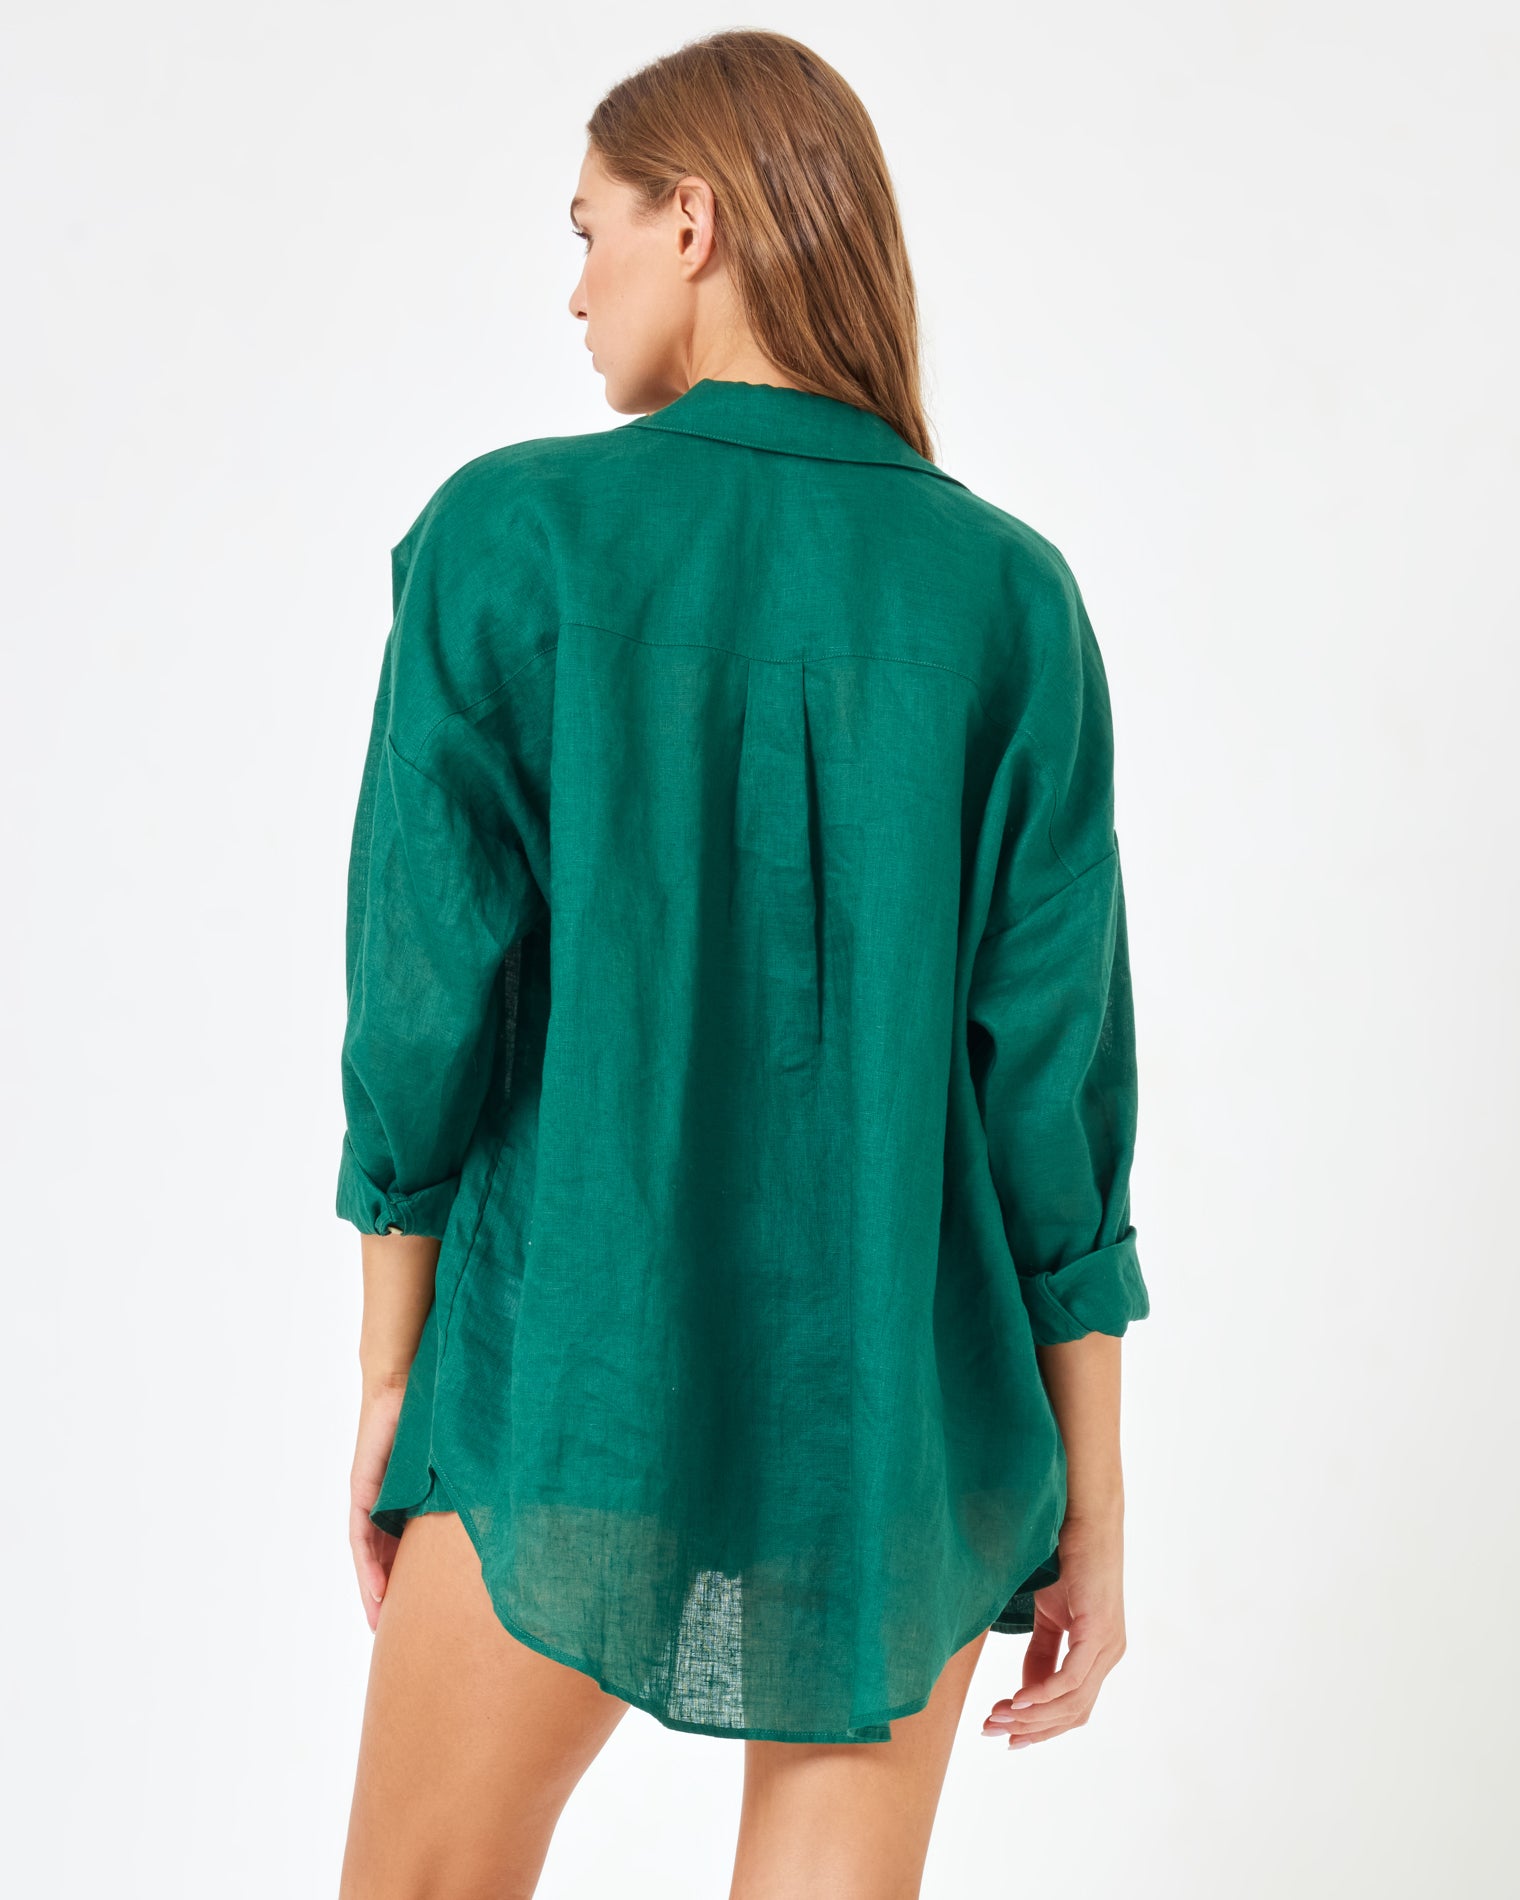 LSPACE x Revolve Rio Tunic - Emerald Emerald | Model: Daria (size: S) | Hover